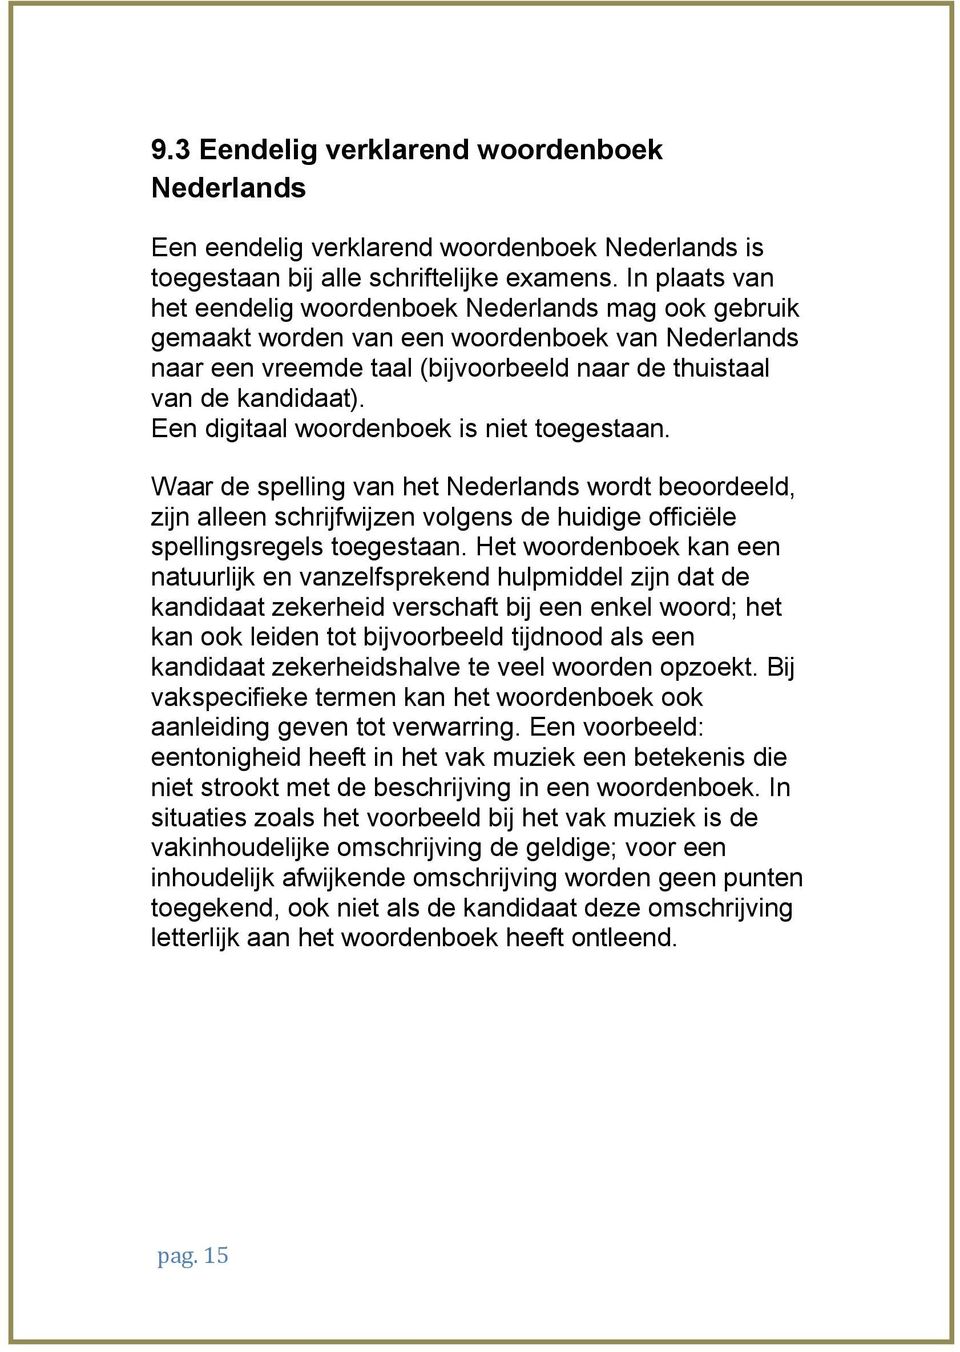 Een digitaal woordenboek is niet toegestaan. Waar de spelling van het Nederlands wordt beoordeeld, zijn alleen schrijfwijzen volgens de huidige officiële spellingsregels toegestaan.